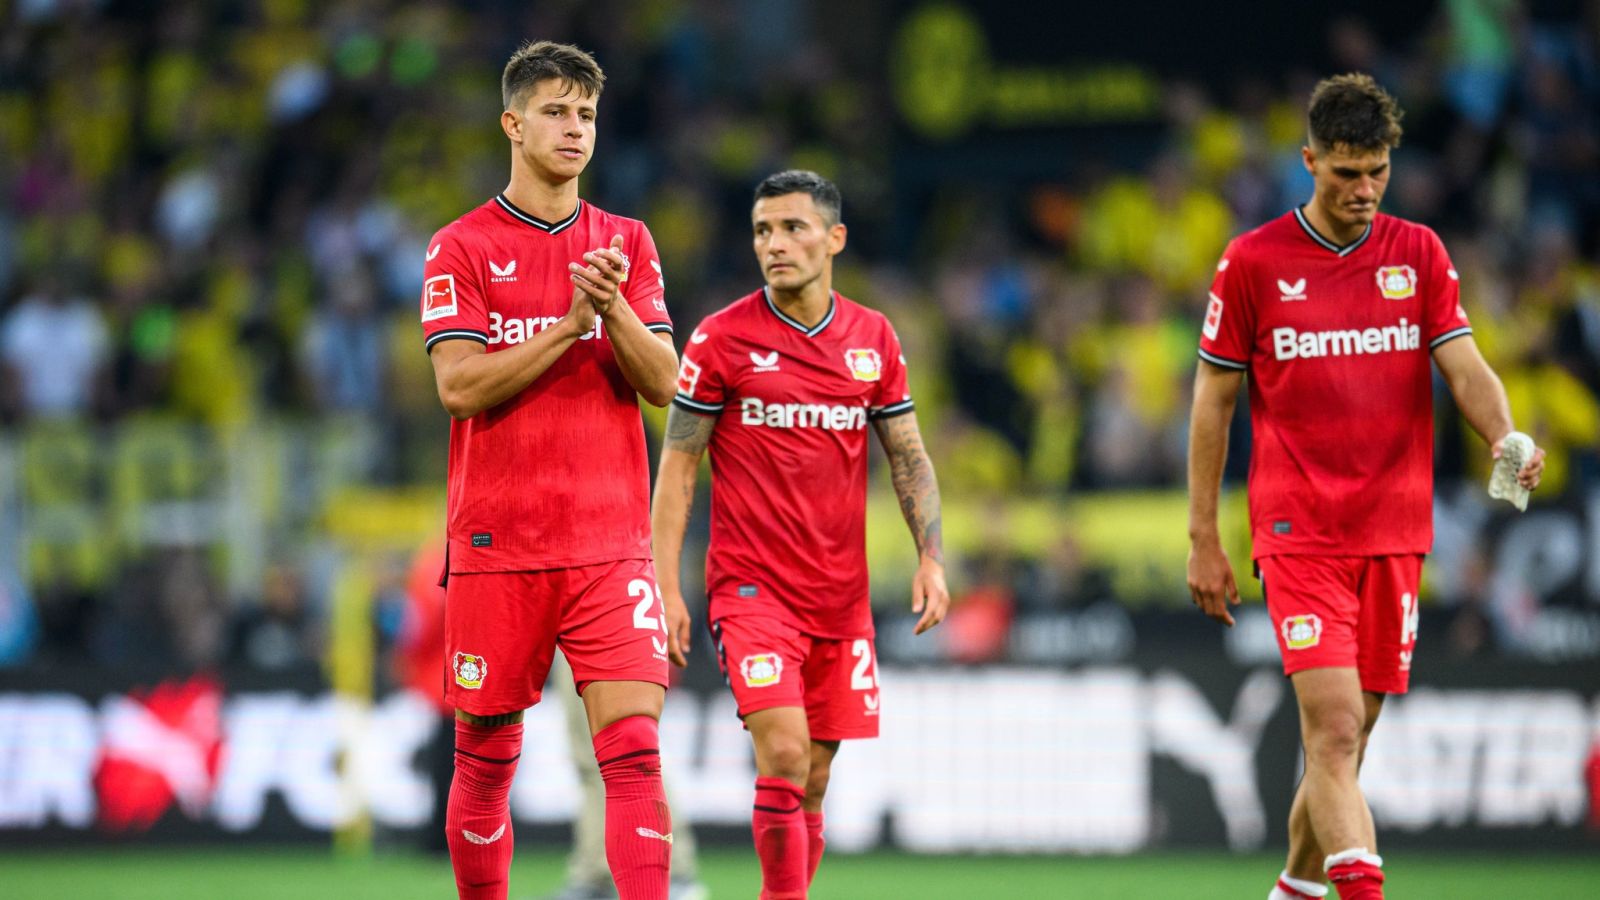 Nhận định, nhận định Bayer Leverkusen vs Augsburg, 20h30 ngày 13/8 - Bundesliga